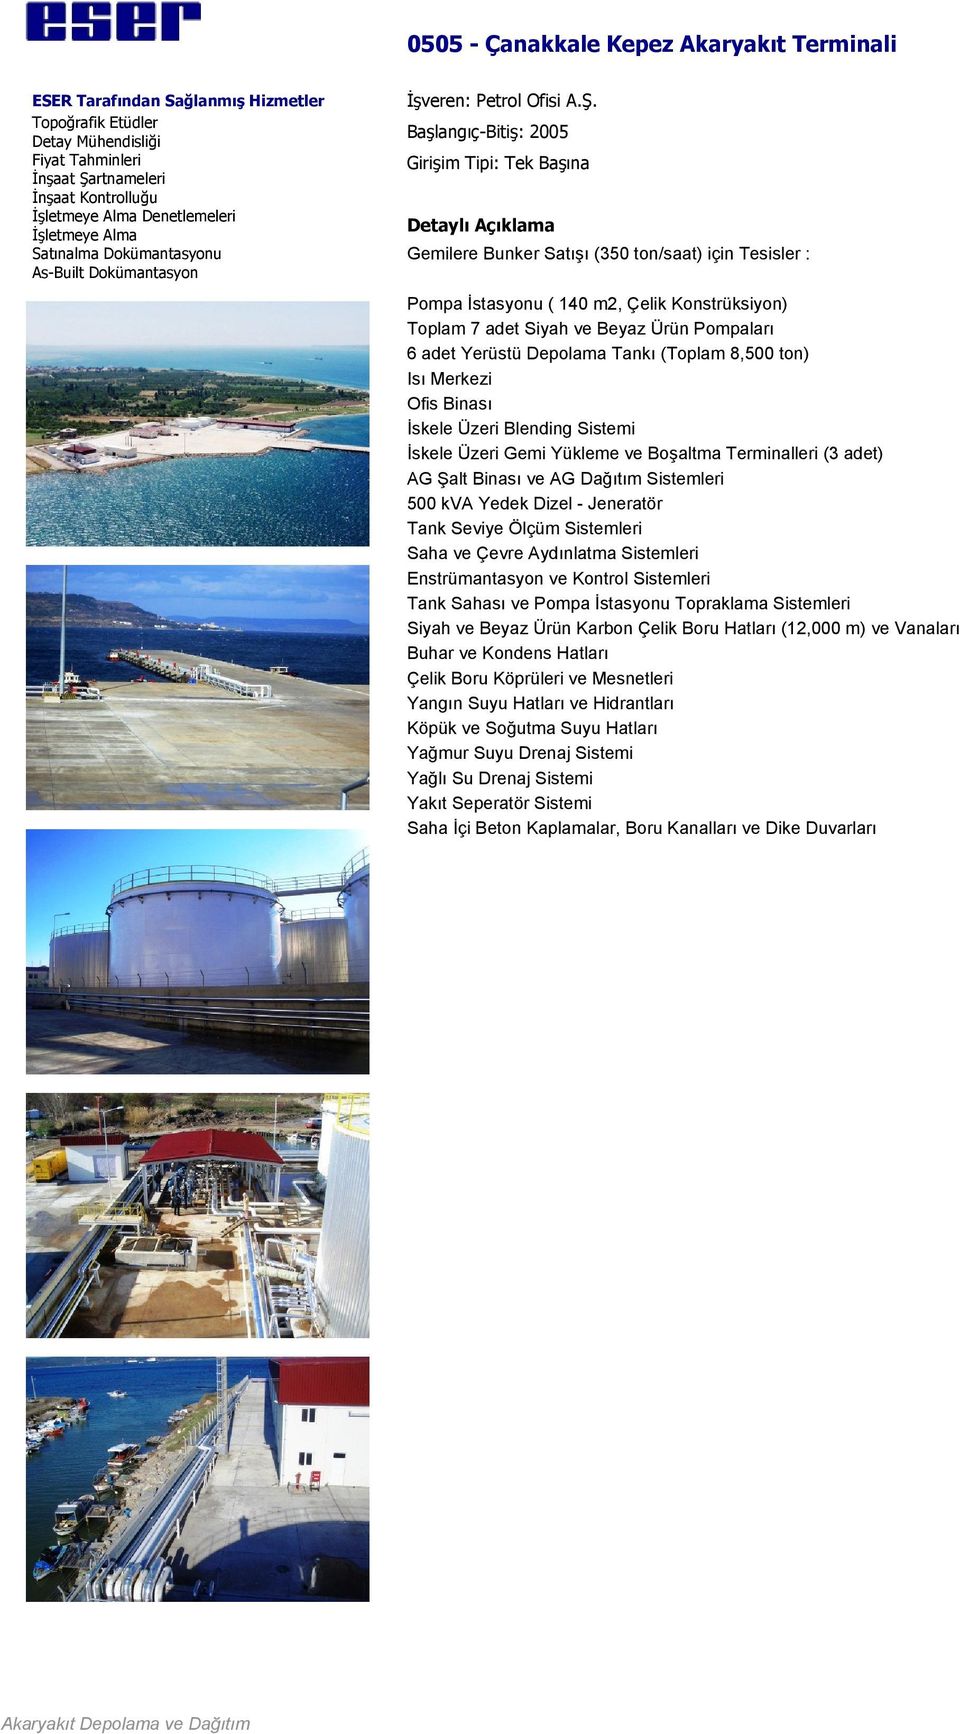 (Toplam 8,500 ton) Isı Merkezi Ofis Binası İskele Üzeri Blending Sistemi İskele Üzeri Gemi Yükleme ve Boşaltma Terminalleri (3 adet) AG Şalt Binası ve AG Dağıtım Sistemleri 500 kva Yedek Dizel -